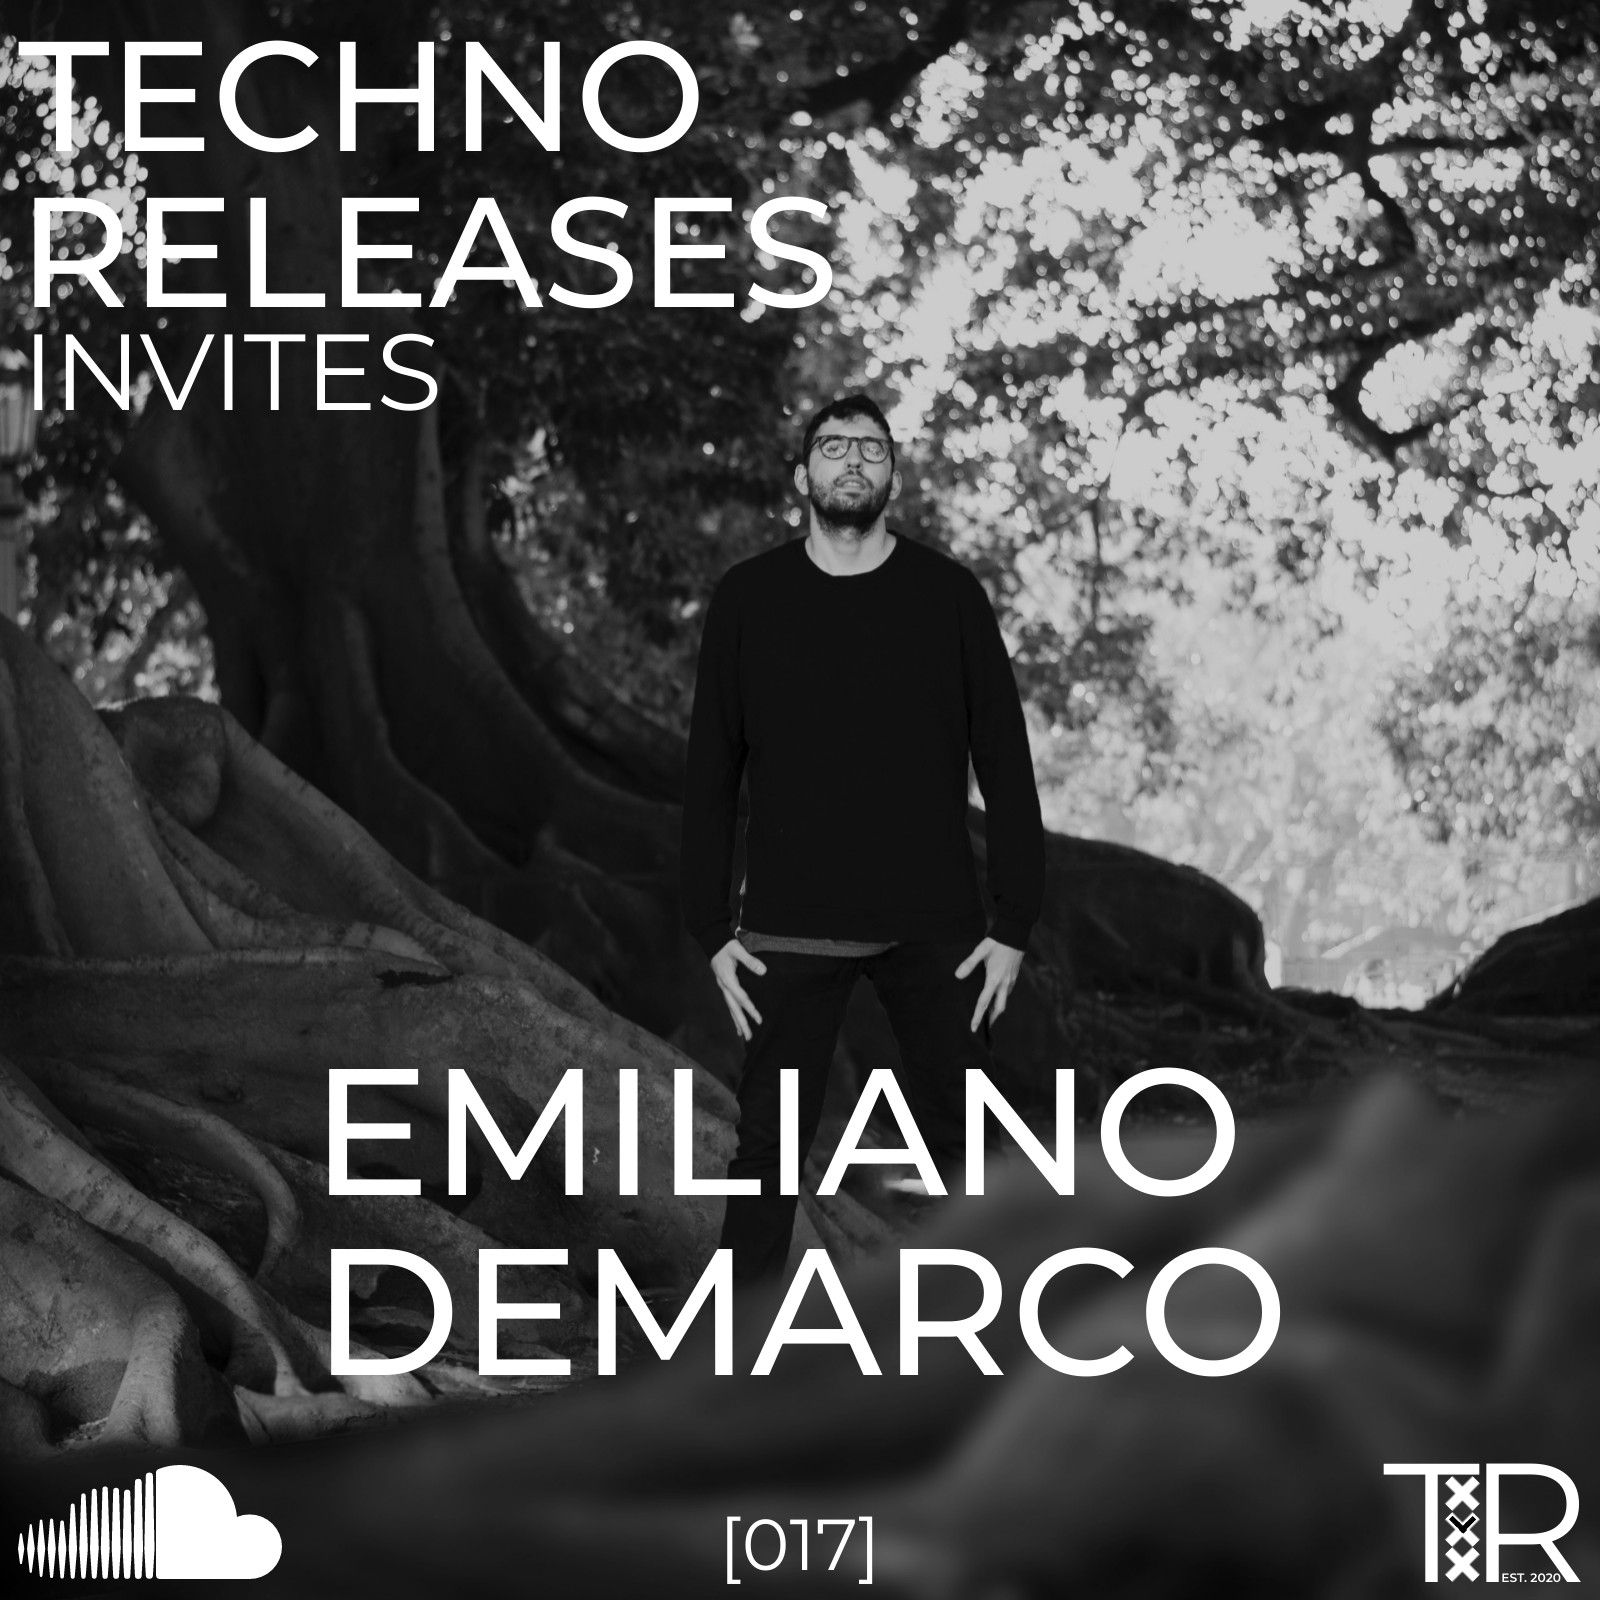 Tikiake Techno Releases Invites Emiliano Demarco - [017]